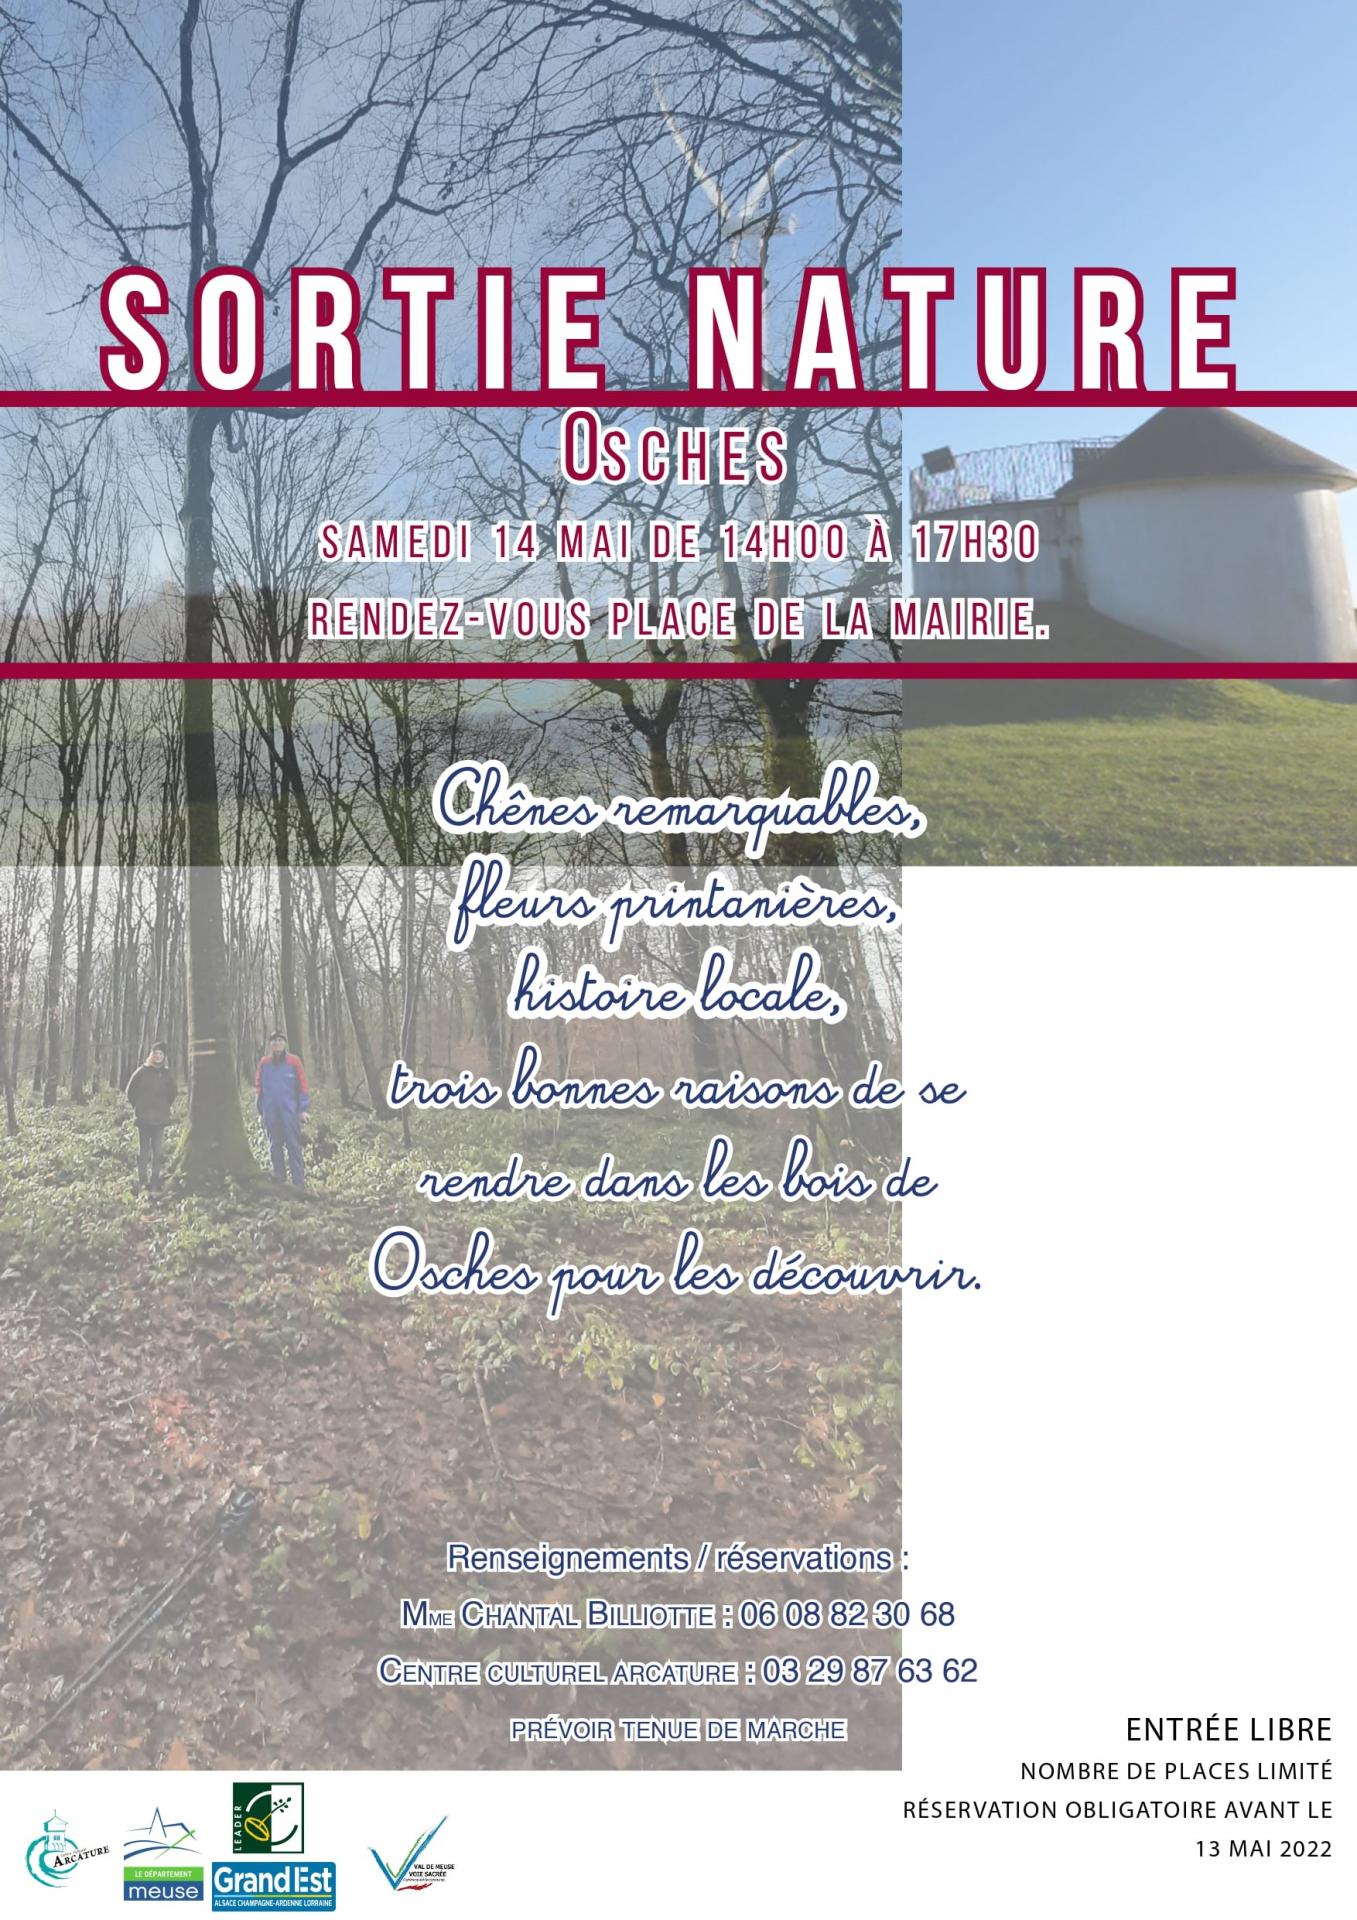 Sortie nature 14 05 22